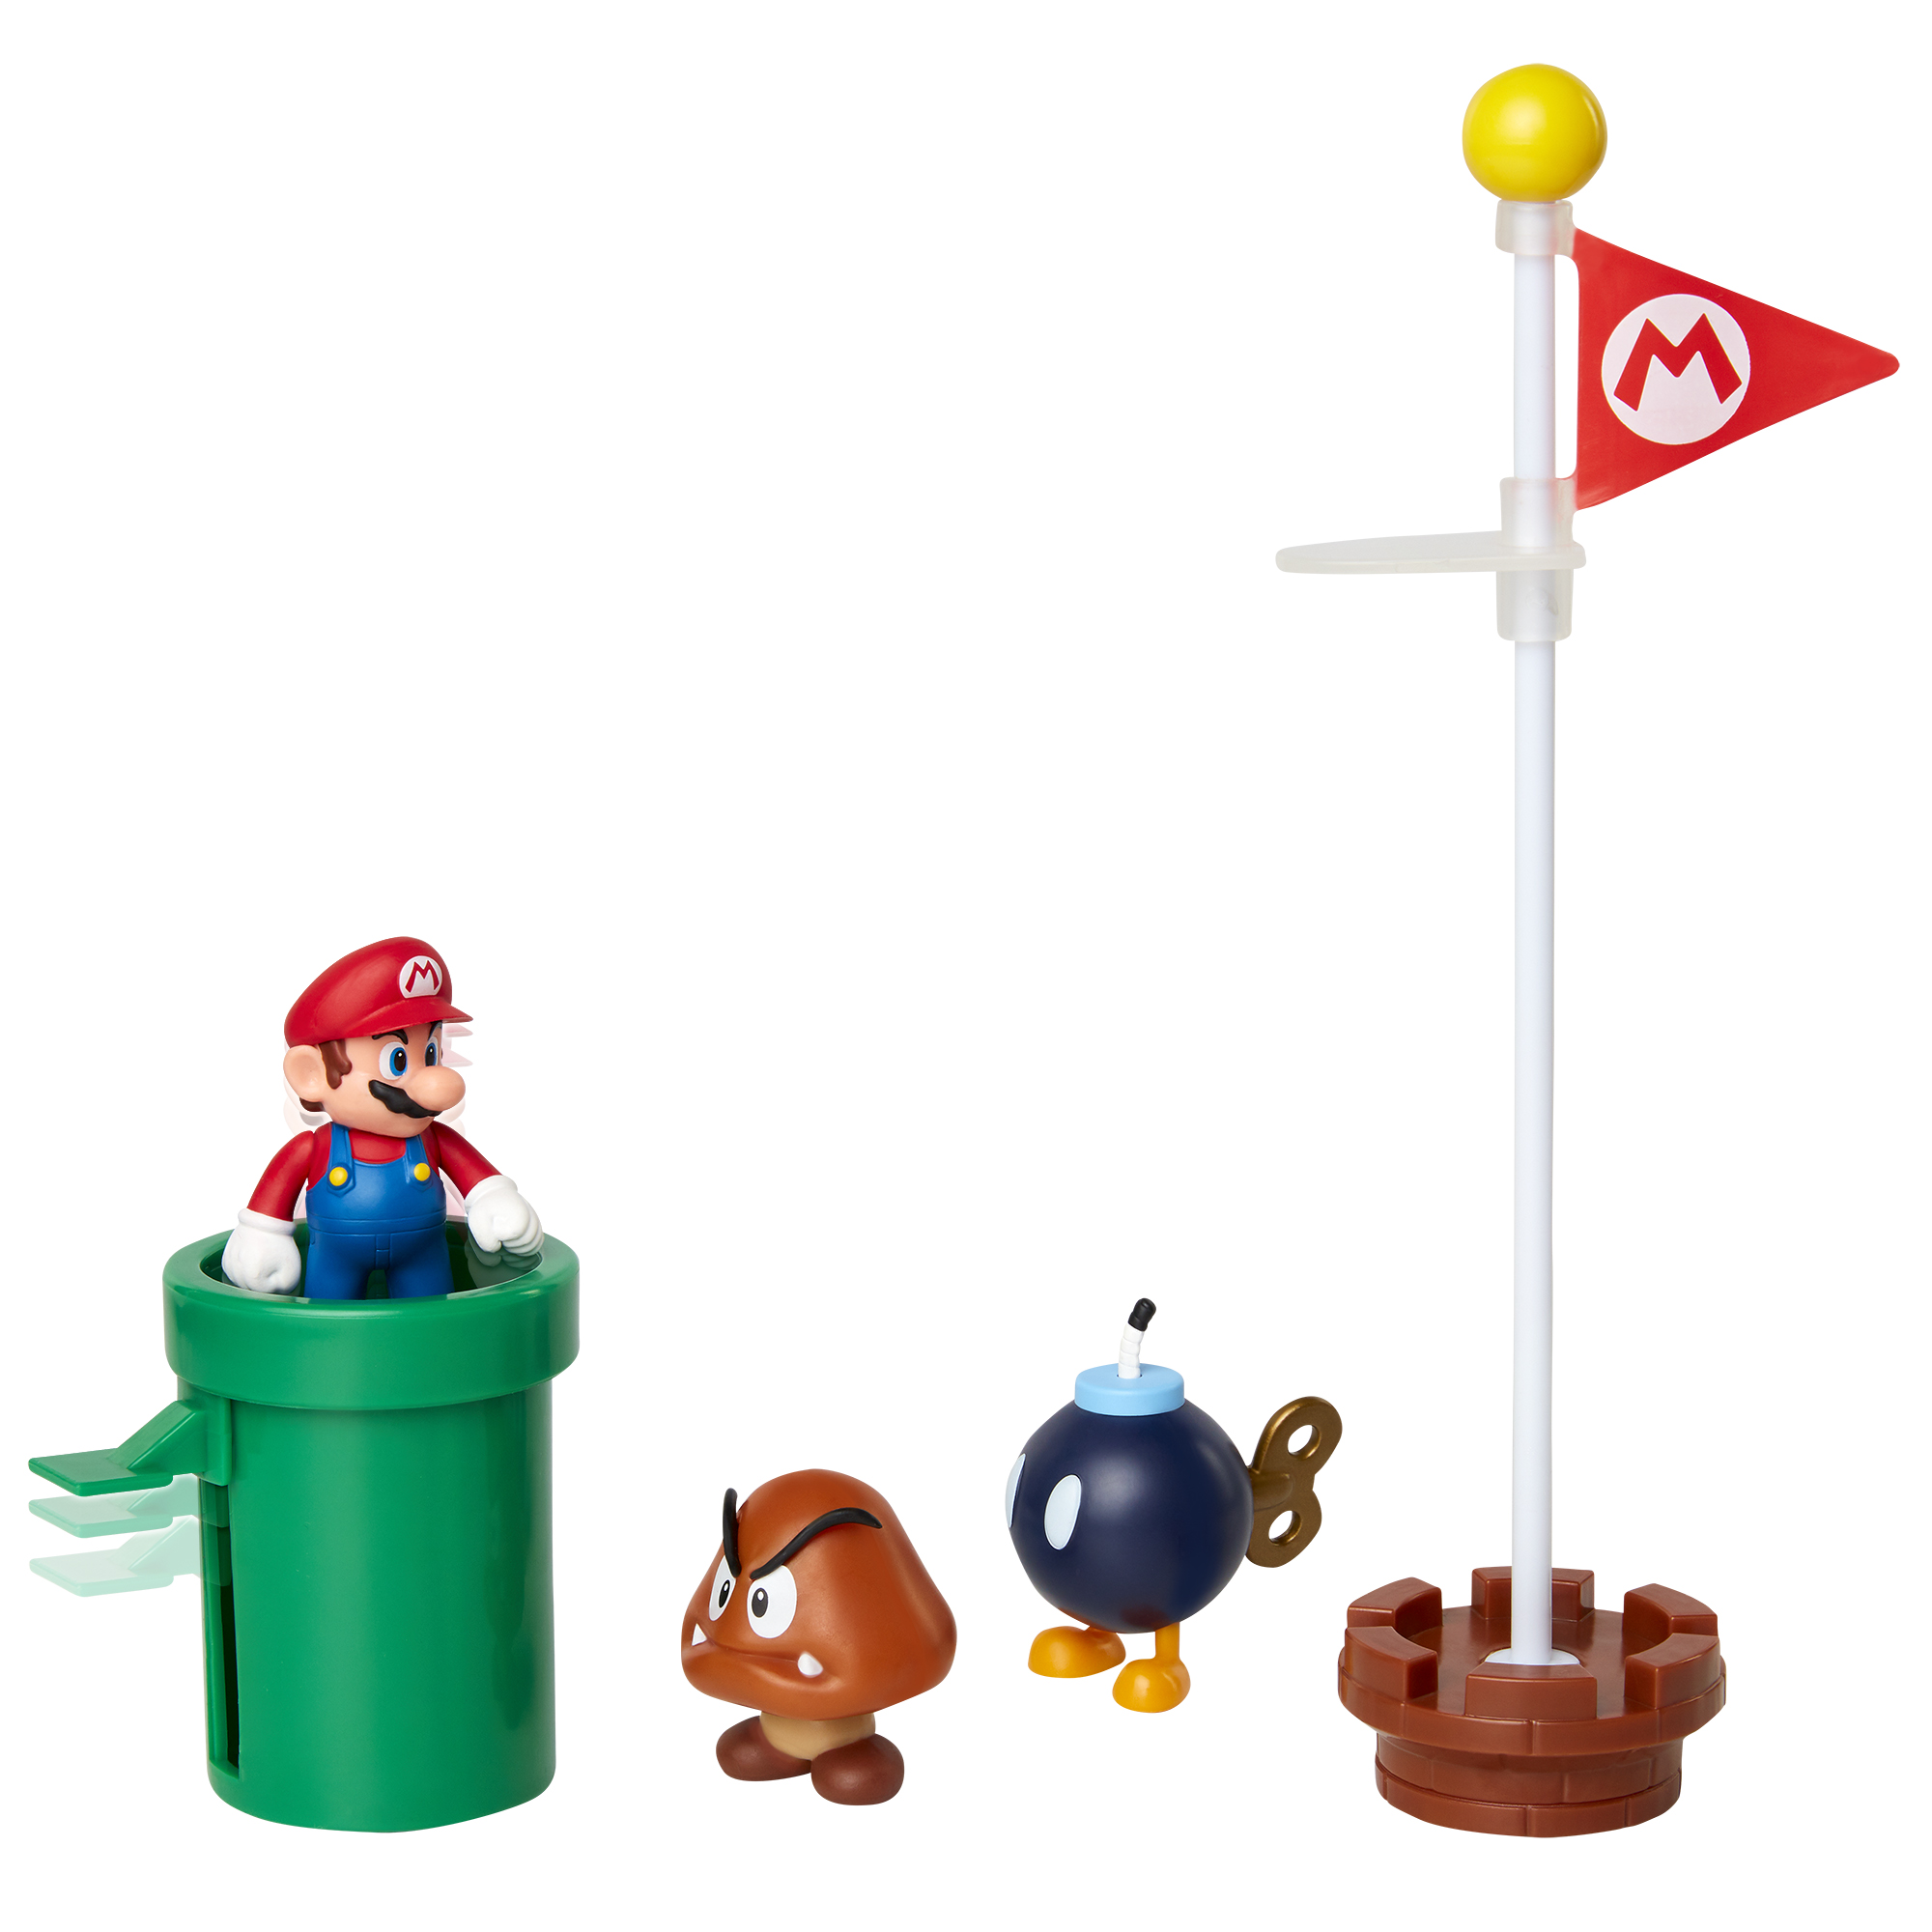 Mario - Super Mario Petite Peluche par JAKKS